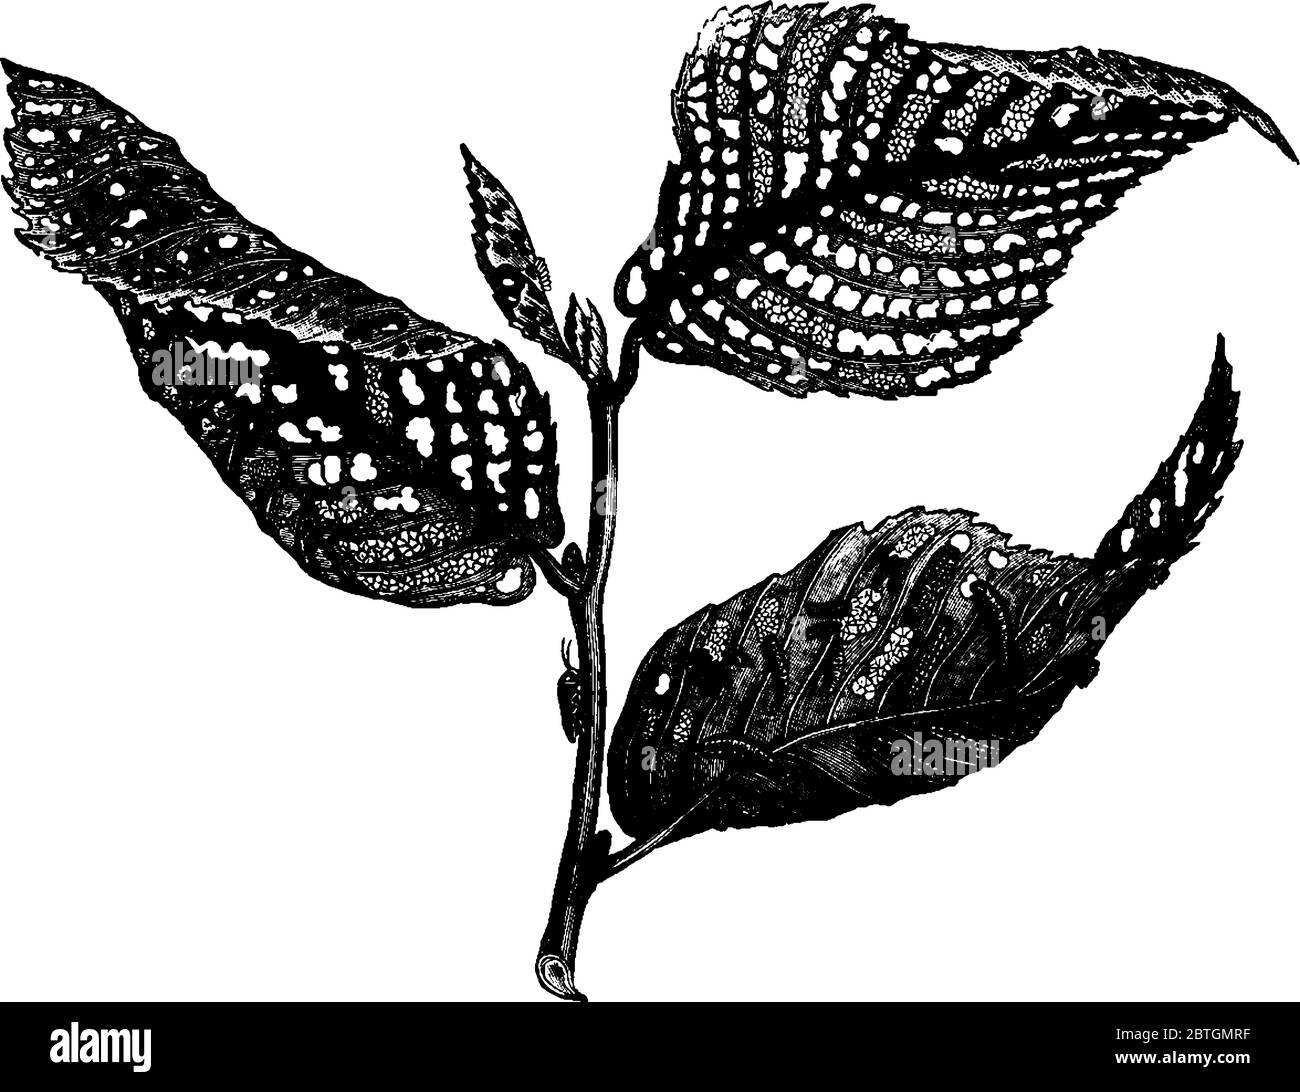 Elm-leaf beetle larvae feeding over leaves and destroyed plant, vintage line drawing or engraving illustration. Stock Vector